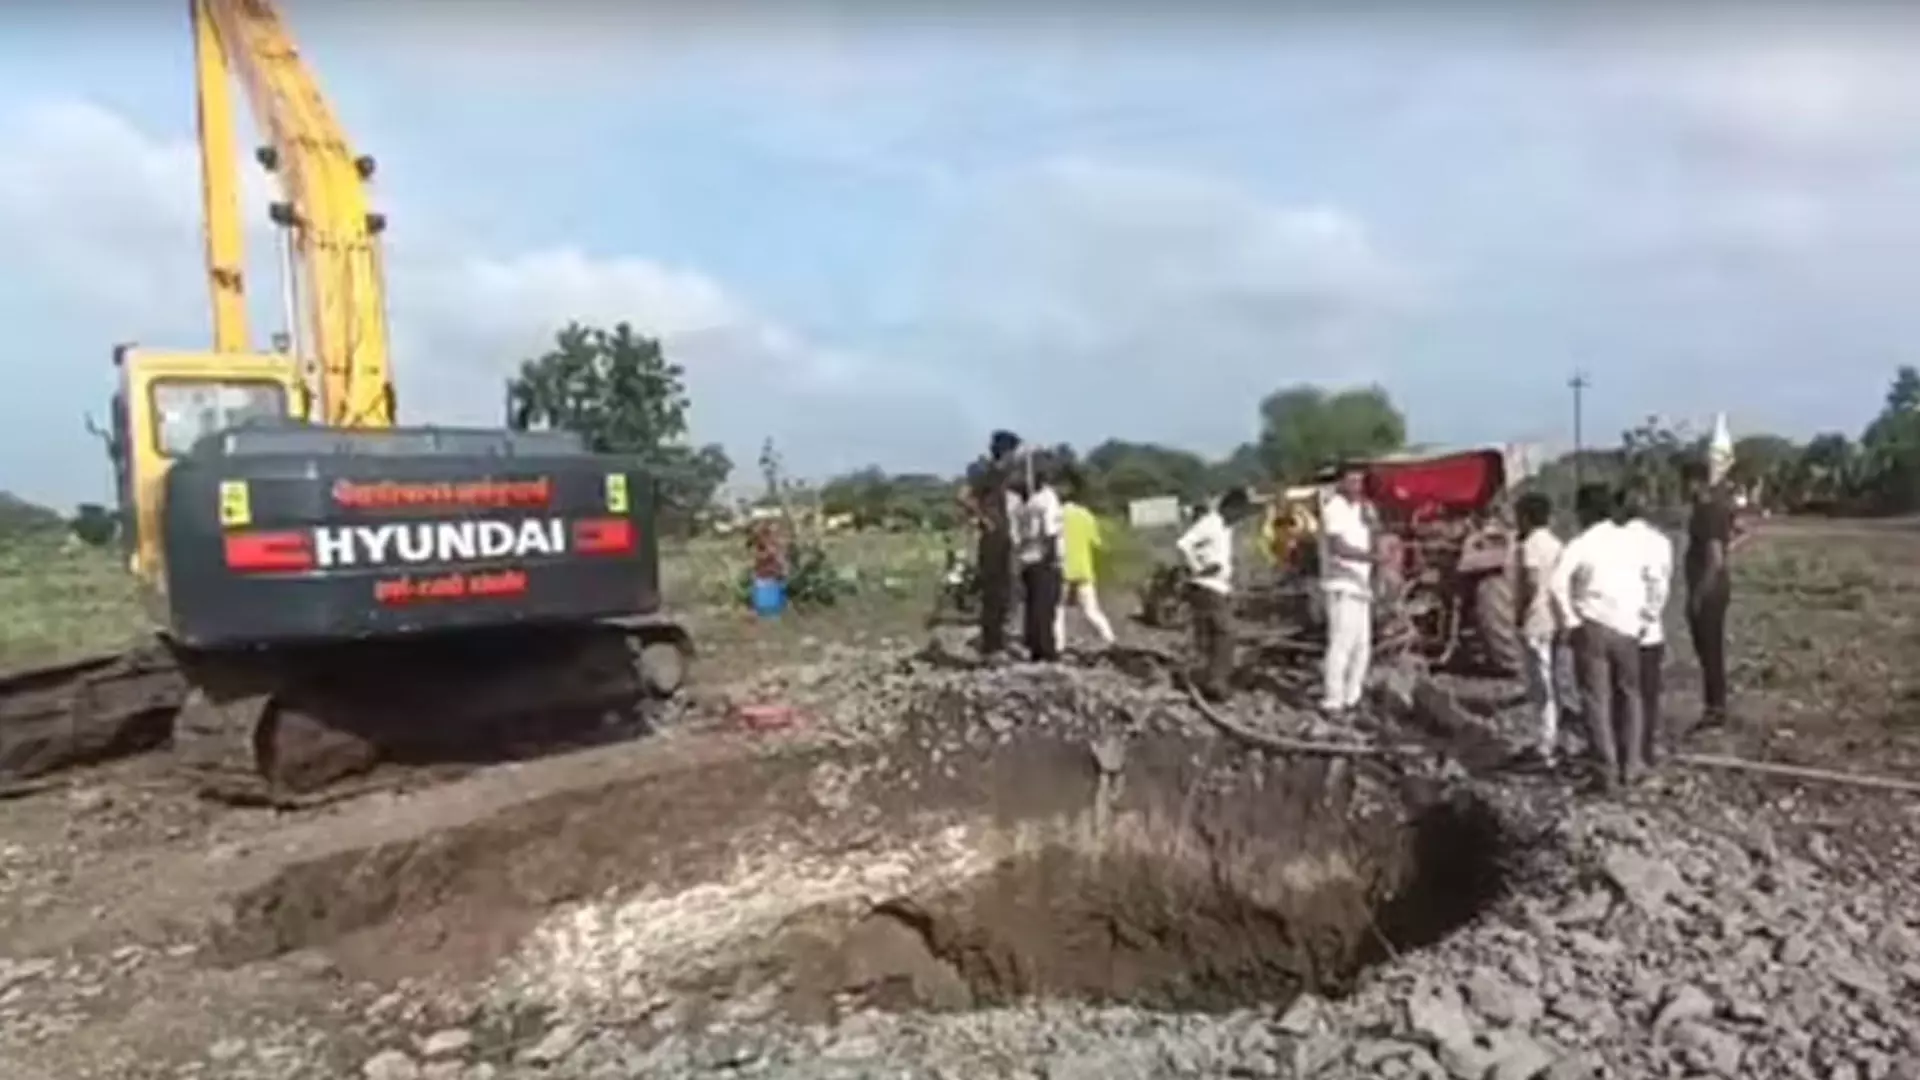 PUNE NEWS: अहमदनगर जिले में कुआं खोदने के दौरान तीन लोगों की मौत